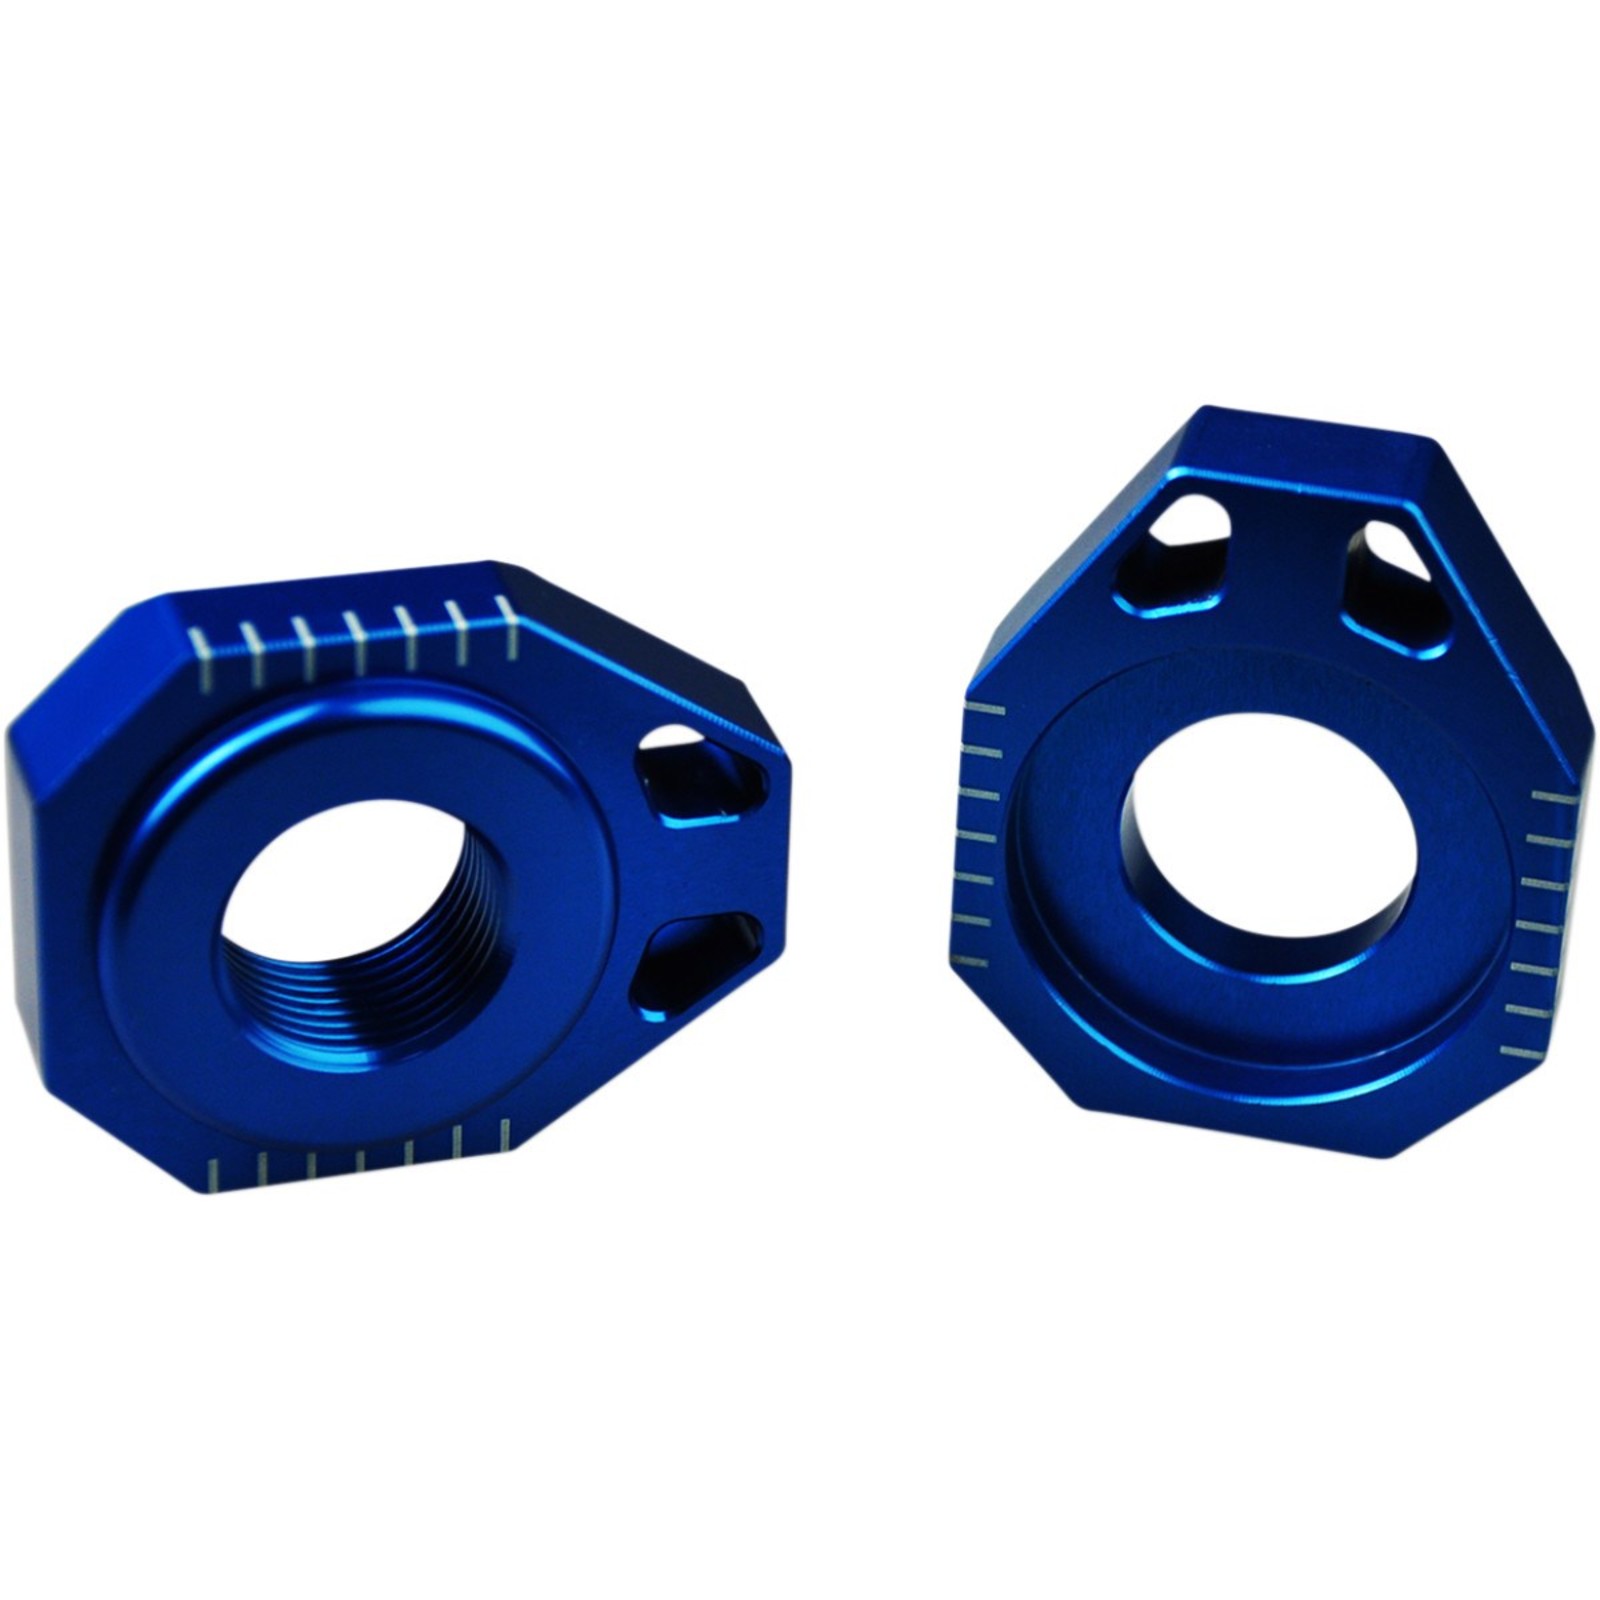 ZAP Achsblöcke Kettenspanner passend für KTM SX F; EXC F; XC-W blau 20mm 